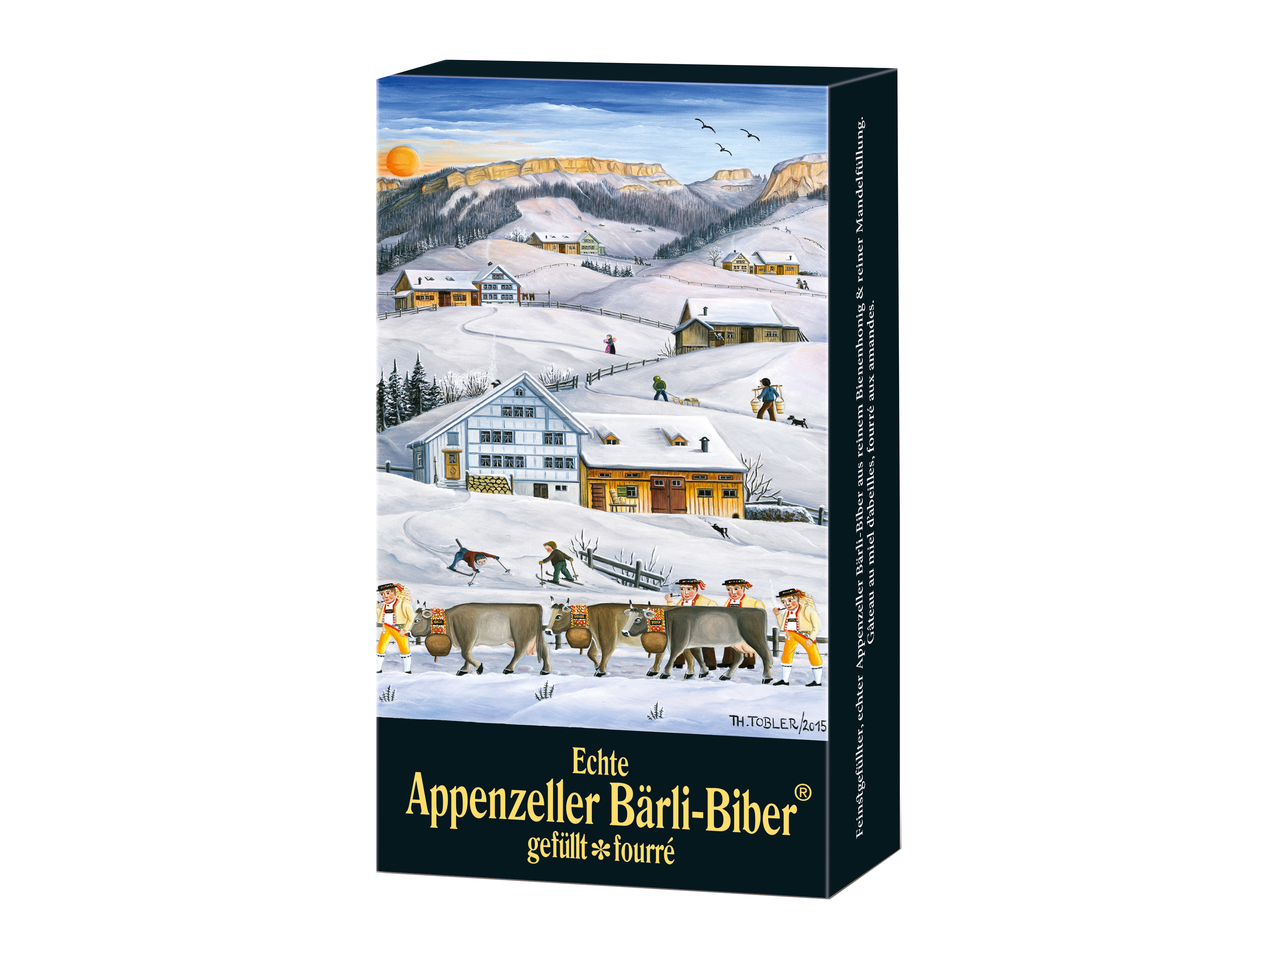 Baerli-Biber de l'Appenzell Bischofberger